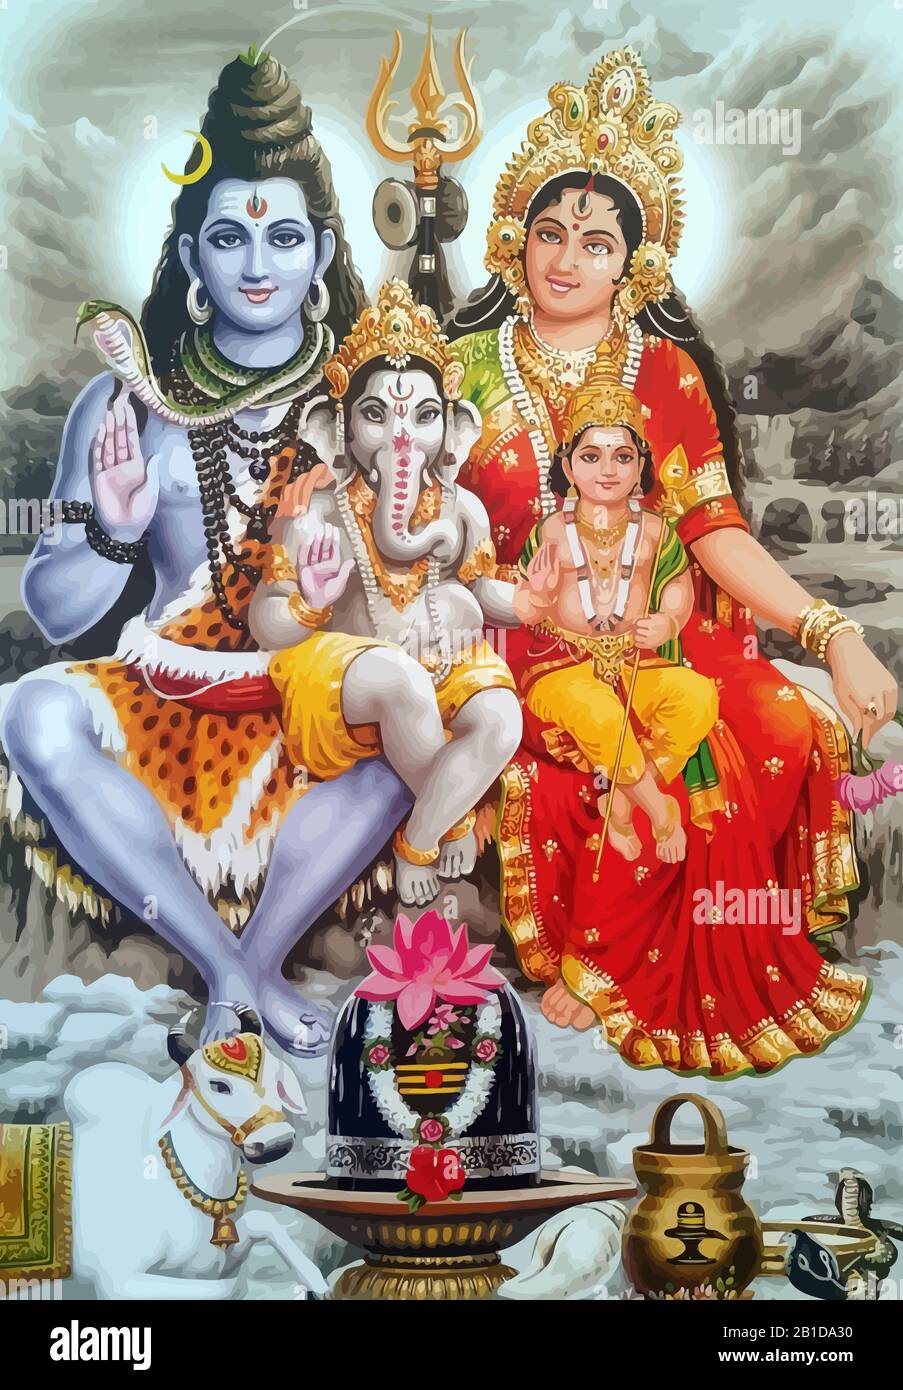 Seigneur Shiva Saint Murugan et Ganesha éléphant dieux l'hindouisme l'illustration de la mythologie Banque D'Images